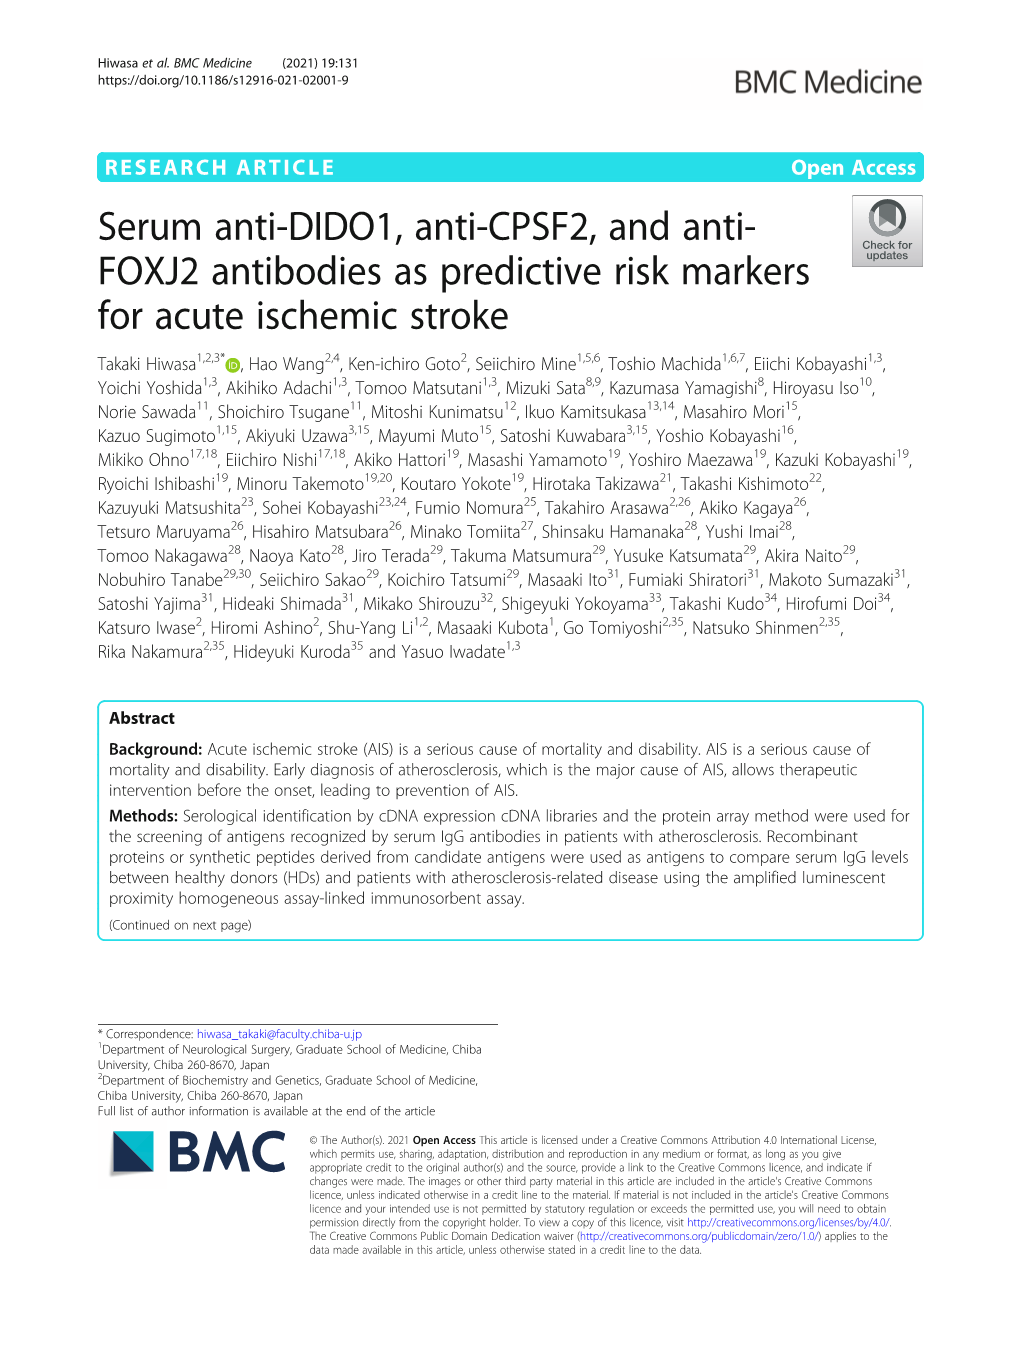 Serum Anti-DIDO1, Anti-CPSF2, and Anti-FOXJ2 Antibodies As Predictive